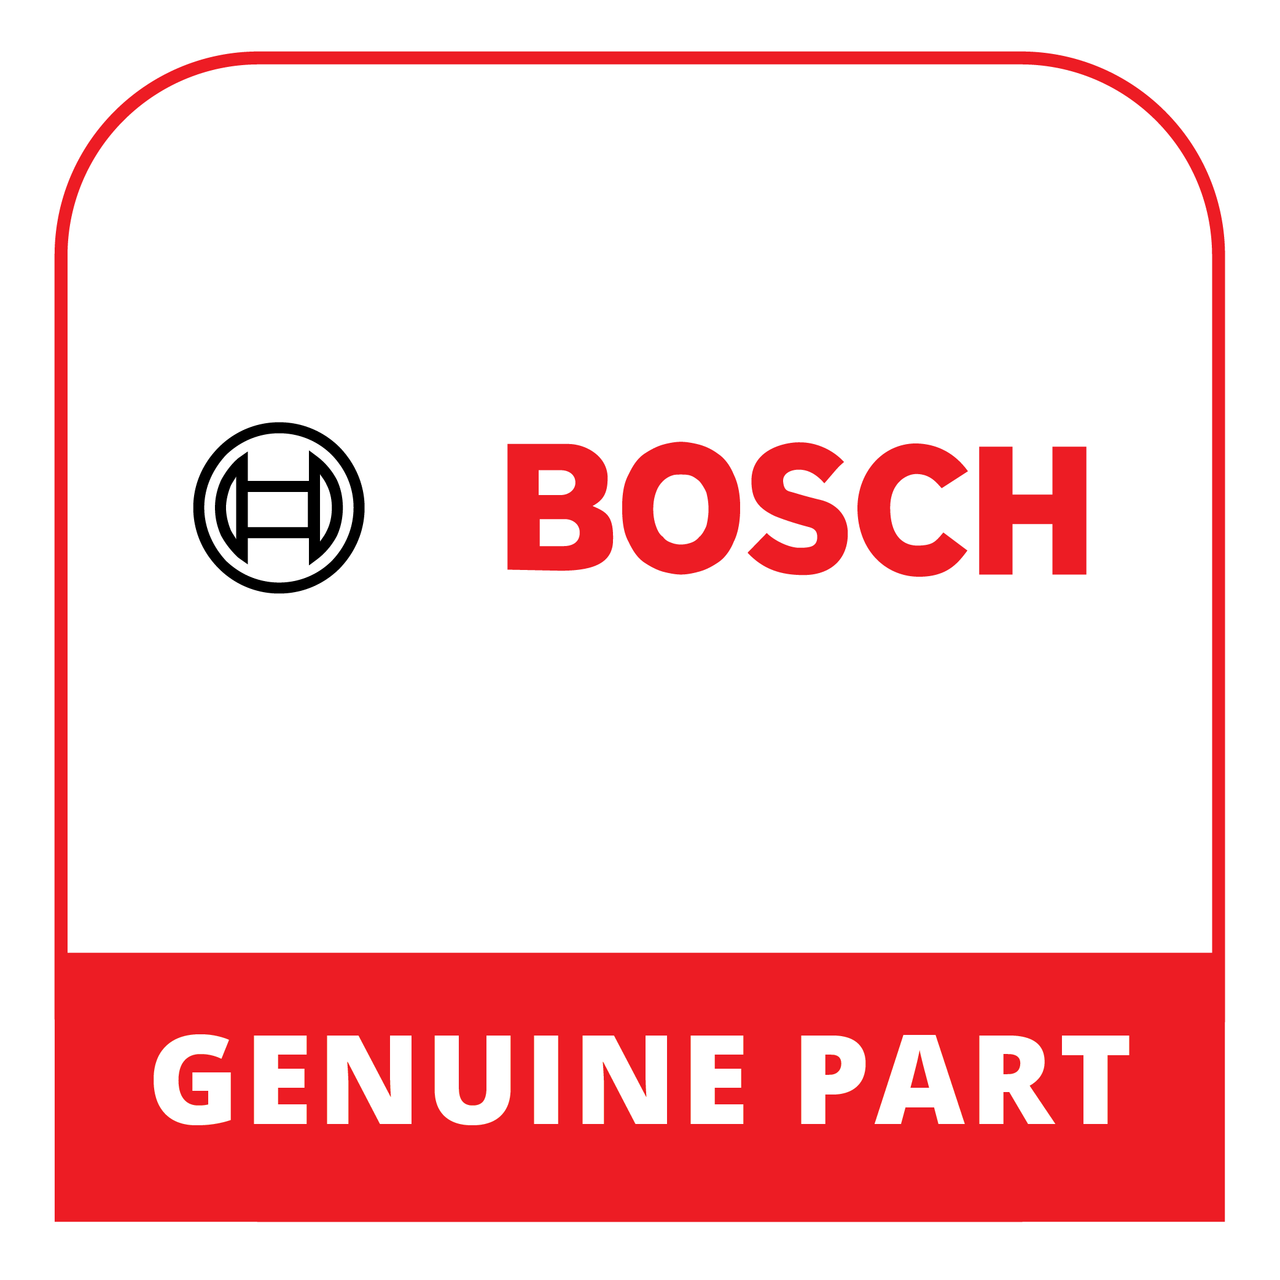 Bosch (Thermador) 20002663 - Door - Genuine Bosch (Thermador) Part